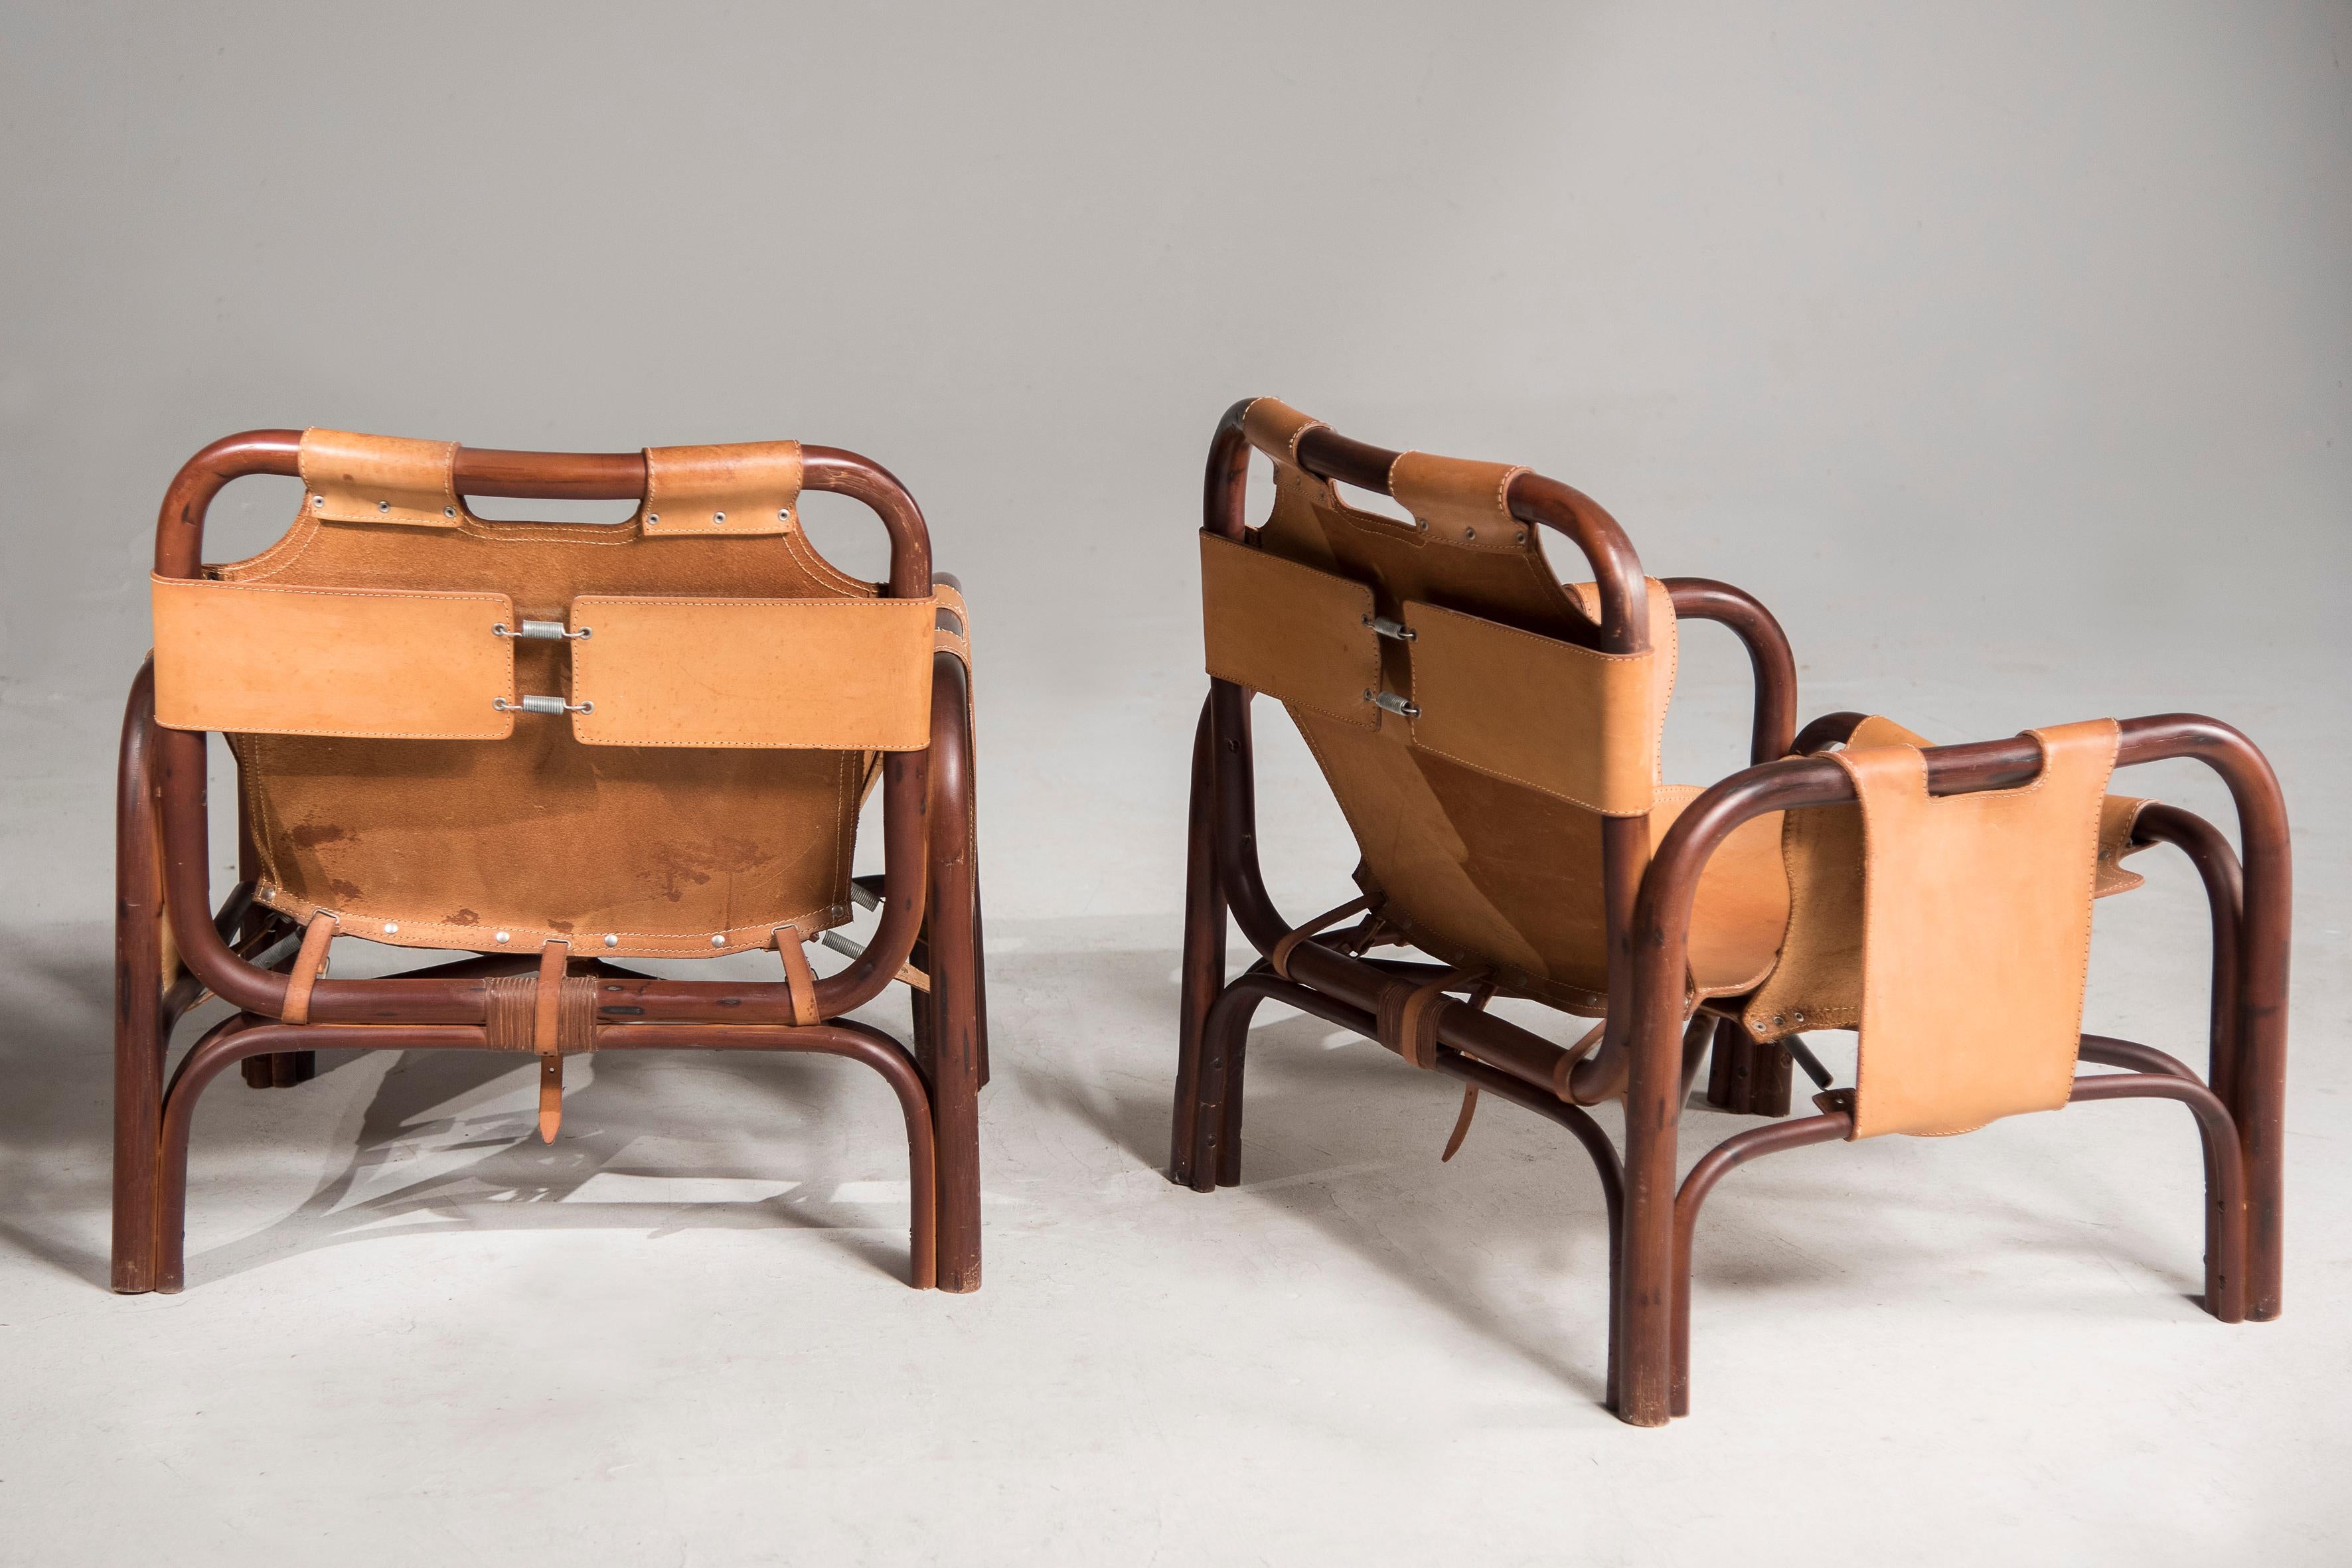 Paar Sessel Modell Safari von Tito Agnoli aus den 1970er Jahren
Leder
Konservativ restauriert - es gibt Flecken auf dem Leder
Preis Euro 4800 Paar
Maße 67x63 x71 cm.
 